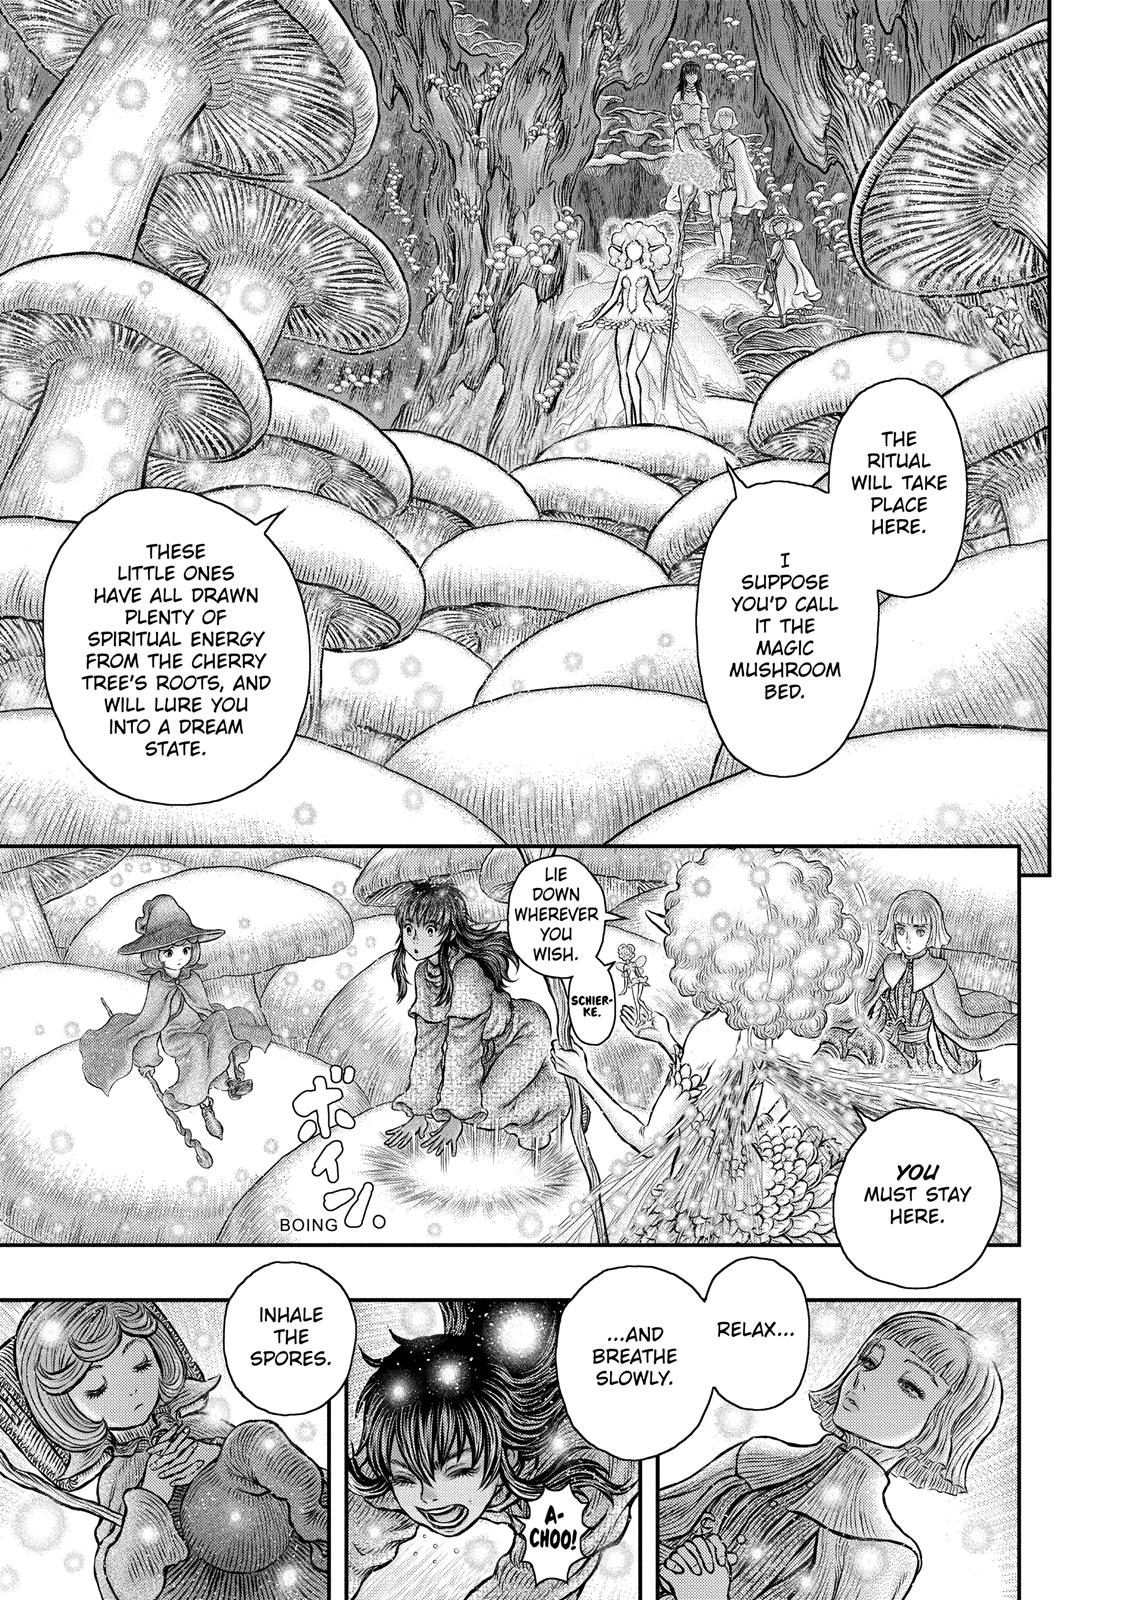 Berserk Manga Chapter 347 image 12